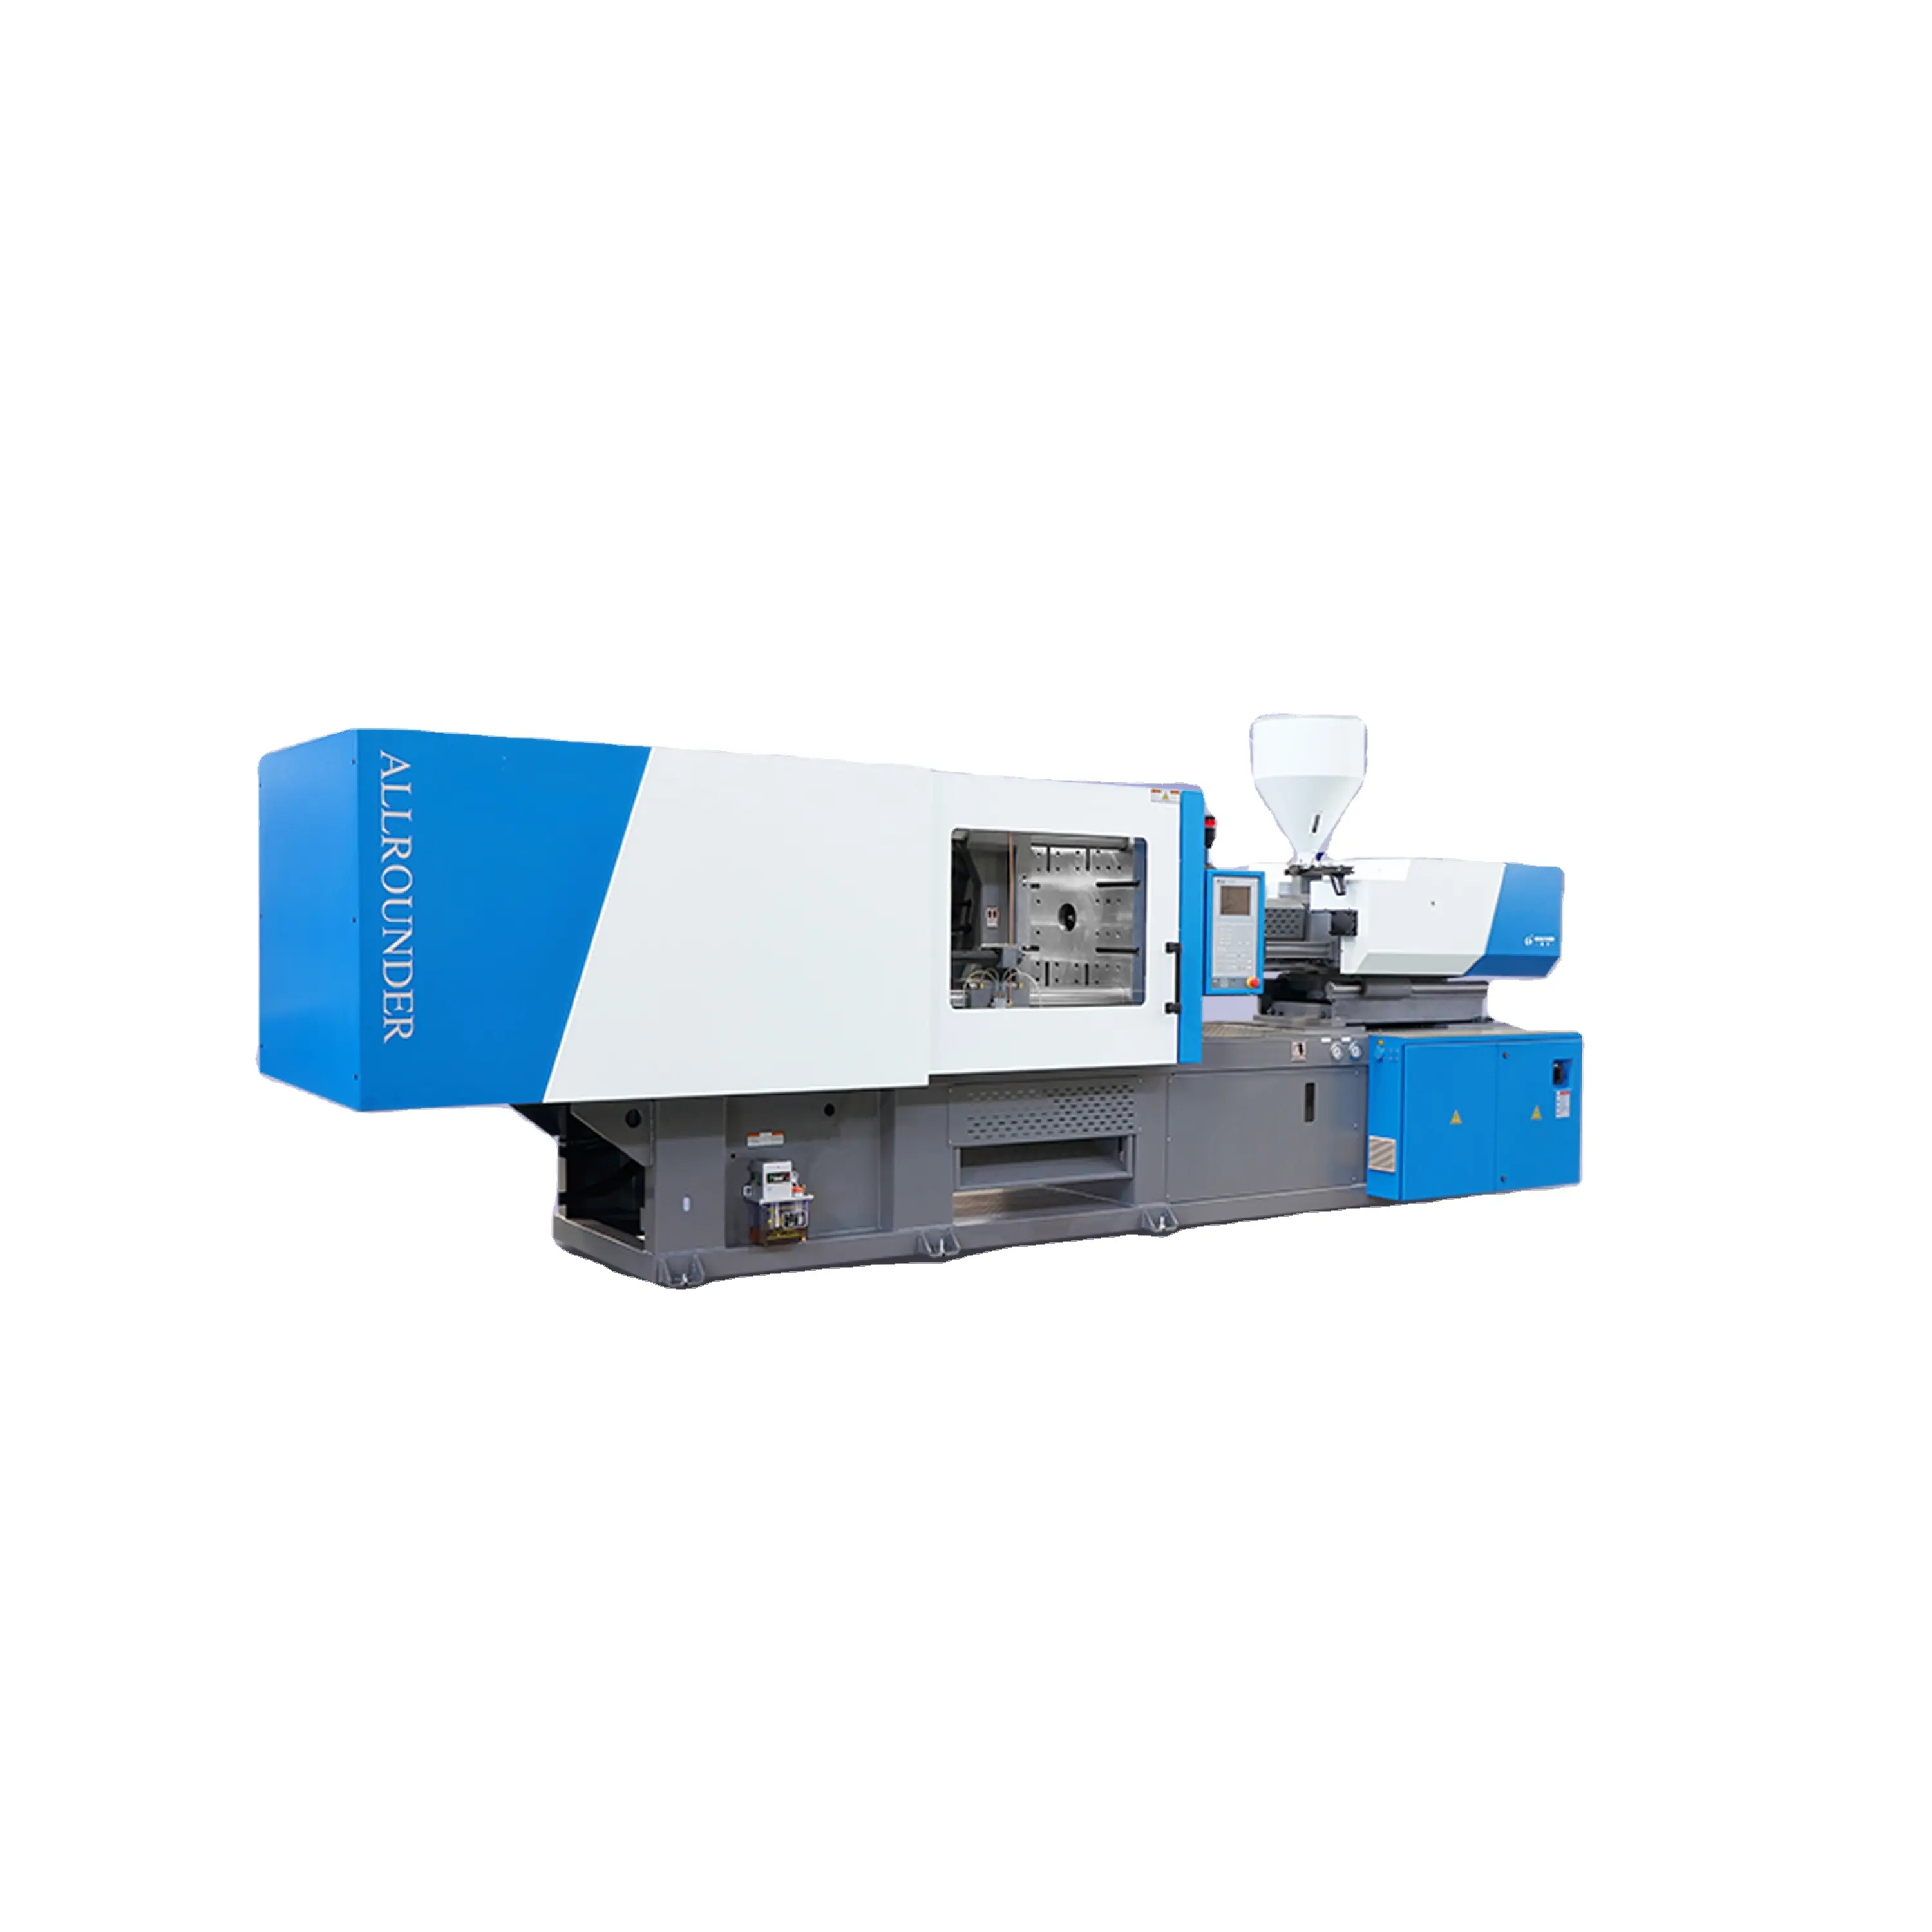 HCK mesin cetakan injeksi Fitting PVC 280 ton 3 inci mesin cetak injeksi hemat energi servo mesin pembuat fitting